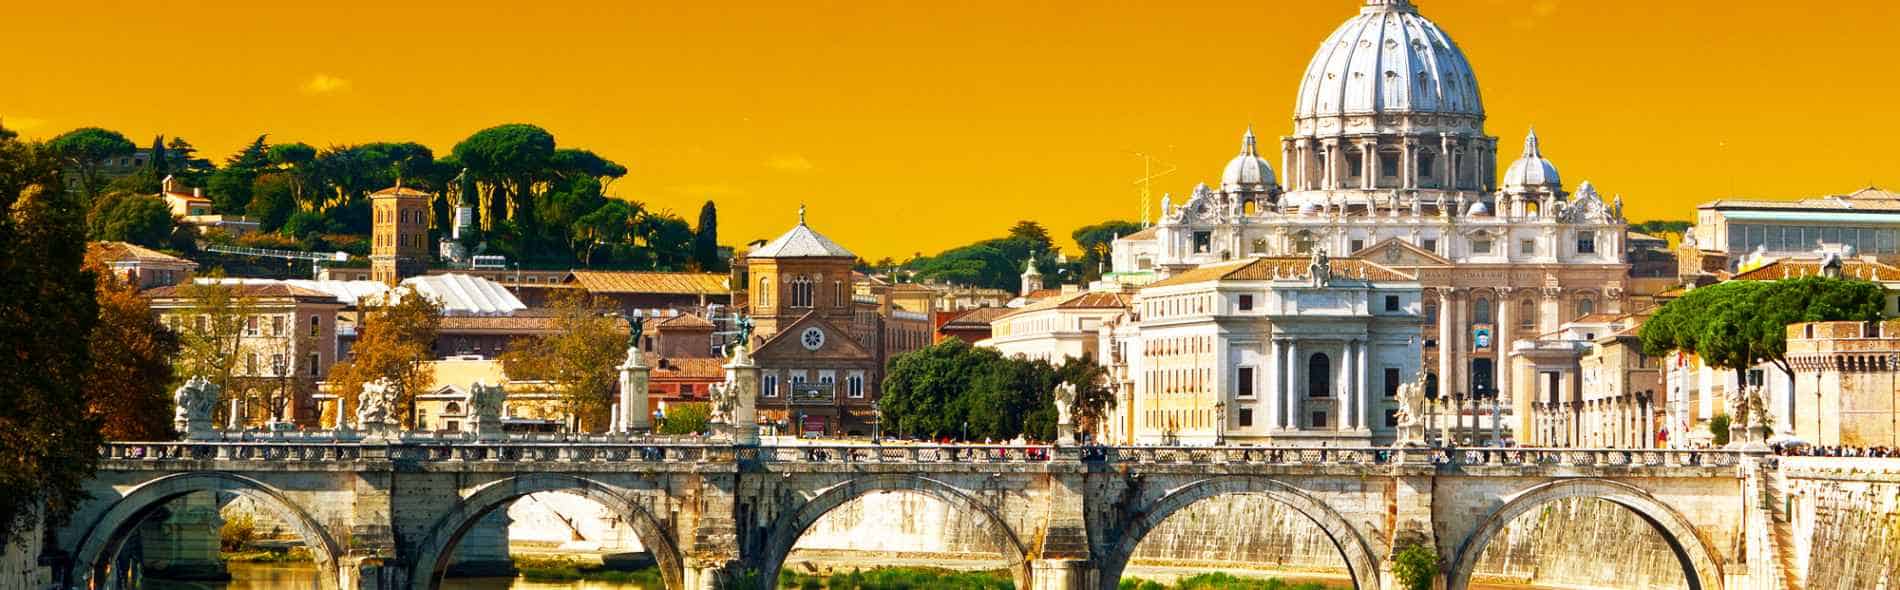 Booking di guide turistiche private autorizzate di Roma